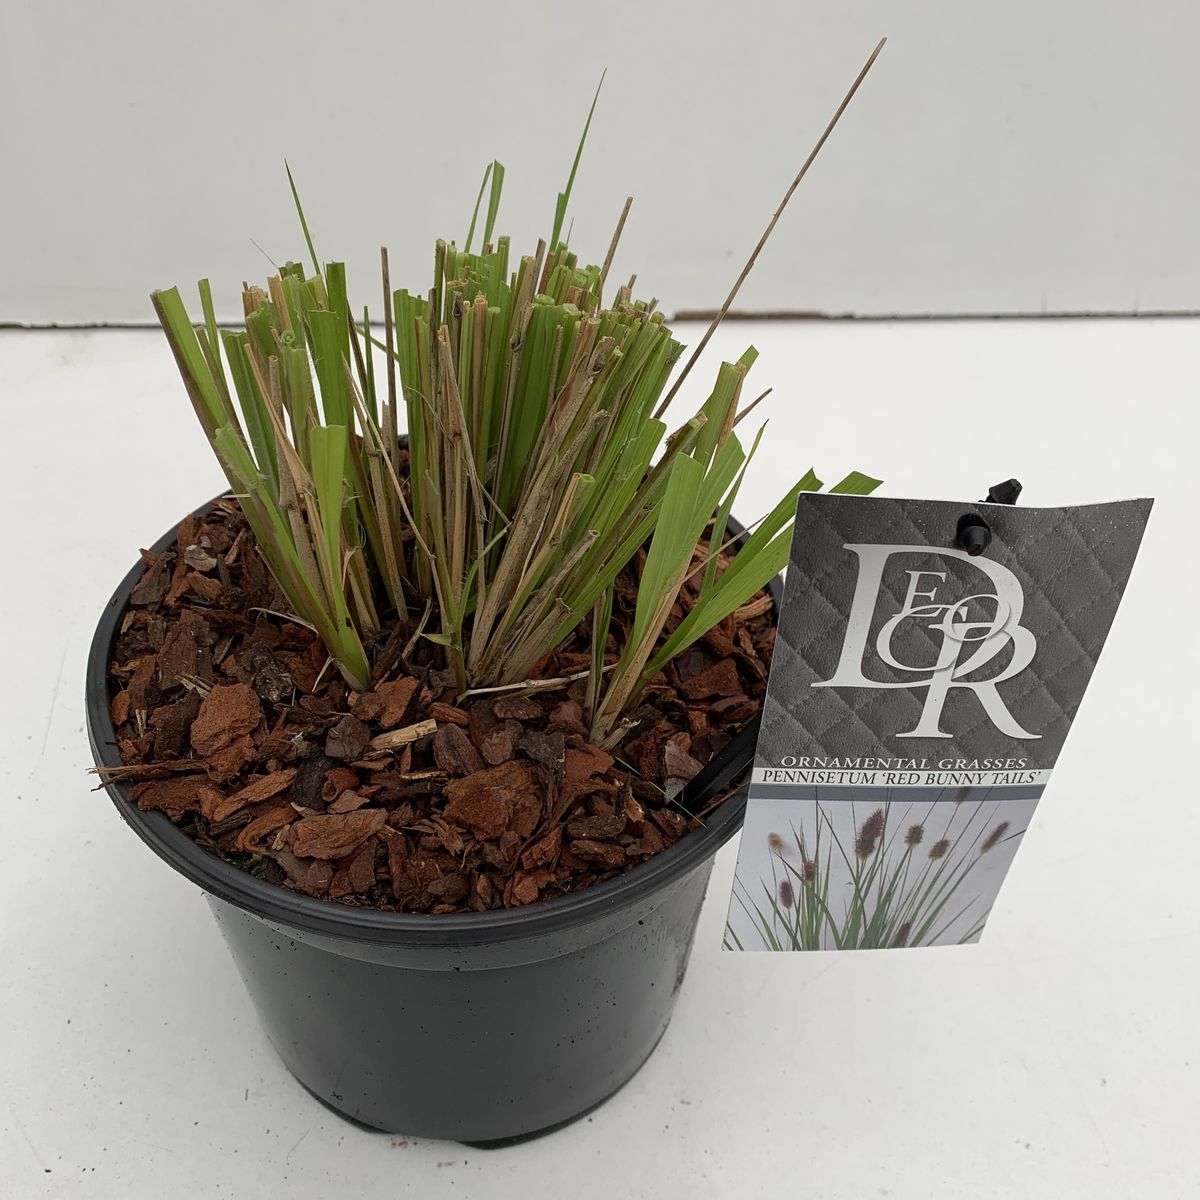 Pennisetum massaicum 'Red Bunny Tails' — Vendita all'ingrosso piante ...